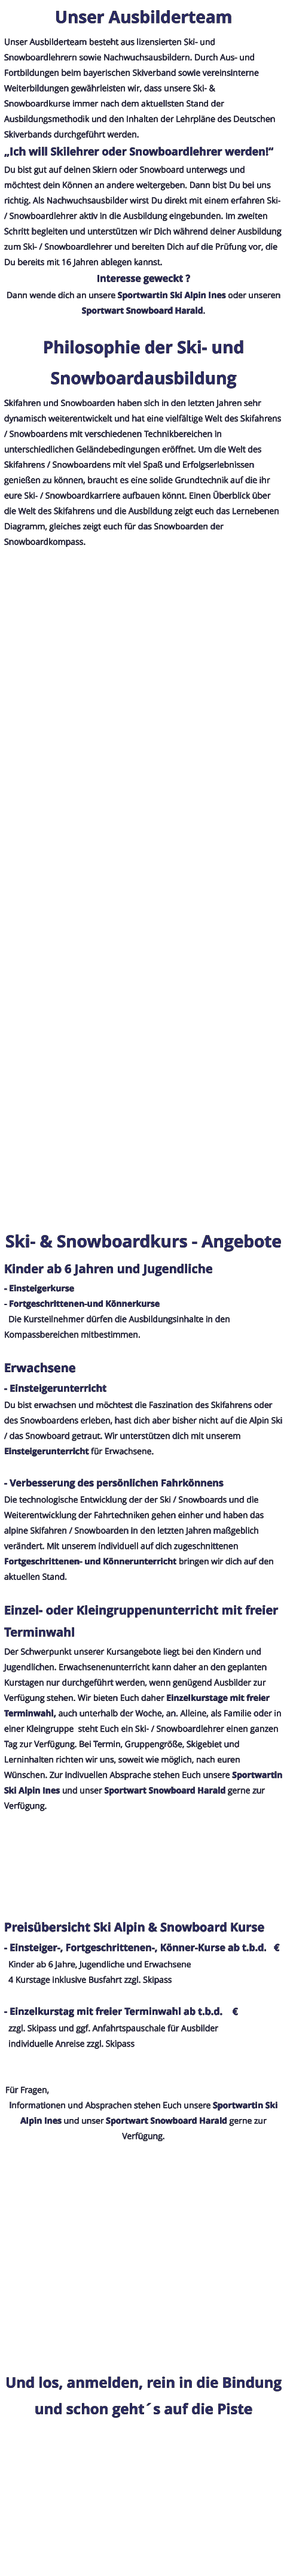 Unser Ausbilderteam Unser Ausbilderteam besteht aus lizensierten Ski- und Snowboardlehrern sowie Nachwuchsausbildern. Durch Aus- und Fortbildungen beim bayerischen Skiverband sowie vereinsinterne Weiterbildungen gewährleisten wir, dass unsere Ski- & Snowboardkurse immer nach dem aktuellsten Stand der Ausbildungsmethodik und den Inhalten der Lehrpläne des Deutschen Skiverbands durchgeführt werden. „Ich will Skilehrer oder Snowboardlehrer werden!“ Du bist gut auf deinen Skiern oder Snowboard unterwegs und möchtest dein Können an andere weitergeben. Dann bist Du bei uns richtig. Als Nachwuchsausbilder wirst Du direkt mit einem erfahren Ski- / Snowboardlehrer aktiv in die Ausbildung eingebunden. Im zweiten Schritt begleiten und unterstützen wir Dich während deiner Ausbildung zum Ski- / Snowboardlehrer und bereiten Dich auf die Prüfung vor, die Du bereits mit 16 Jahren ablegen kannst. Interesse geweckt ? Dann wende dich an unsere Sportwartin Ski Alpin Ines oder unseren Sportwart Snowboard Harald.  Philosophie der Ski- und Snowboardausbildung Skifahren und Snowboarden haben sich in den letzten Jahren sehr dynamisch weiterentwickelt und hat eine vielfältige Welt des Skifahrens / Snowboardens mit verschiedenen Technikbereichen in unterschiedlichen Geländebedingungen eröffnet. Um die Welt des Skifahrens / Snowboardens mit viel Spaß und Erfolgserlebnissen genießen zu können, braucht es eine solide Grundtechnik auf die ihr eure Ski- / Snowboardkarriere aufbauen könnt. Einen Überblick über die Welt des Skifahrens und die Ausbildung zeigt euch das Lernebenen Diagramm, gleiches zeigt euch für das Snowboarden der Snowboardkompass.     Ski- & Snowboardkurs - Angebote Kinder ab 6 Jahren und Jugendliche - Einsteigerkurse - Fortgeschrittenen-und Könnerkurse   Die Kursteilnehmer dürfen die Ausbildungsinhalte in den Kompassbereichen mitbestimmen.  Erwachsene - Einsteigerunterricht Du bist erwachsen und möchtest die Faszination des Skifahrens oder des Snowboardens erleben, hast dich aber bisher nicht auf die Alpin Ski / das Snowboard getraut. Wir unterstützen dich mit unserem Einsteigerunterricht für Erwachsene.  - Verbesserung des persönlichen Fahrkönnens Die technologische Entwicklung der der Ski / Snowboards und die Weiterentwicklung der Fahrtechniken gehen einher und haben das alpine Skifahren / Snowboarden in den letzten Jahren maßgeblich verändert. Mit unserem individuell auf dich zugeschnittenen Fortgeschrittenen- und Könnerunterricht bringen wir dich auf den aktuellen Stand.  Einzel- oder Kleingruppenunterricht mit freier Terminwahl Der Schwerpunkt unserer Kursangebote liegt bei den Kindern und Jugendlichen. Erwachsenenunterricht kann daher an den geplanten Kurstagen nur durchgeführt werden, wenn genügend Ausbilder zur Verfügung stehen. Wir bieten Euch daher Einzelkurstage mit freier Terminwahl, auch unterhalb der Woche, an. Alleine, als Familie oder in einer Kleingruppe  steht Euch ein Ski- / Snowboardlehrer einen ganzen Tag zur Verfügung. Bei Termin, Gruppengröße, Skigebiet und Lerninhalten richten wir uns, soweit wie möglich, nach euren Wünschen. Zur indivuellen Absprache stehen Euch unsere Sportwartin Ski Alpin Ines und unser Sportwart Snowboard Harald gerne zur Verfügung.  Preisübersicht Ski Alpin & Snowboard Kurse - Einsteiger-, Fortgeschrittenen-, Könner-Kurse ab t.b.d.   €   Kinder ab 6 Jahre, Jugendliche und Erwachsene   4 Kurstage inklusive Busfahrt zzgl. Skipass  - Einzelkurstag mit freier Terminwahl ab t.b.d.    €   zzgl. Skipass und ggf. Anfahrtspauschale für Ausbilder   individuelle Anreise zzgl. Skipass   Für Fragen, Informationen und Absprachen stehen Euch unsere Sportwartin Ski Alpin Ines und unser Sportwart Snowboard Harald gerne zur Verfügung.  Und los, anmelden, rein in die Bindung und schon geht´s auf die Piste